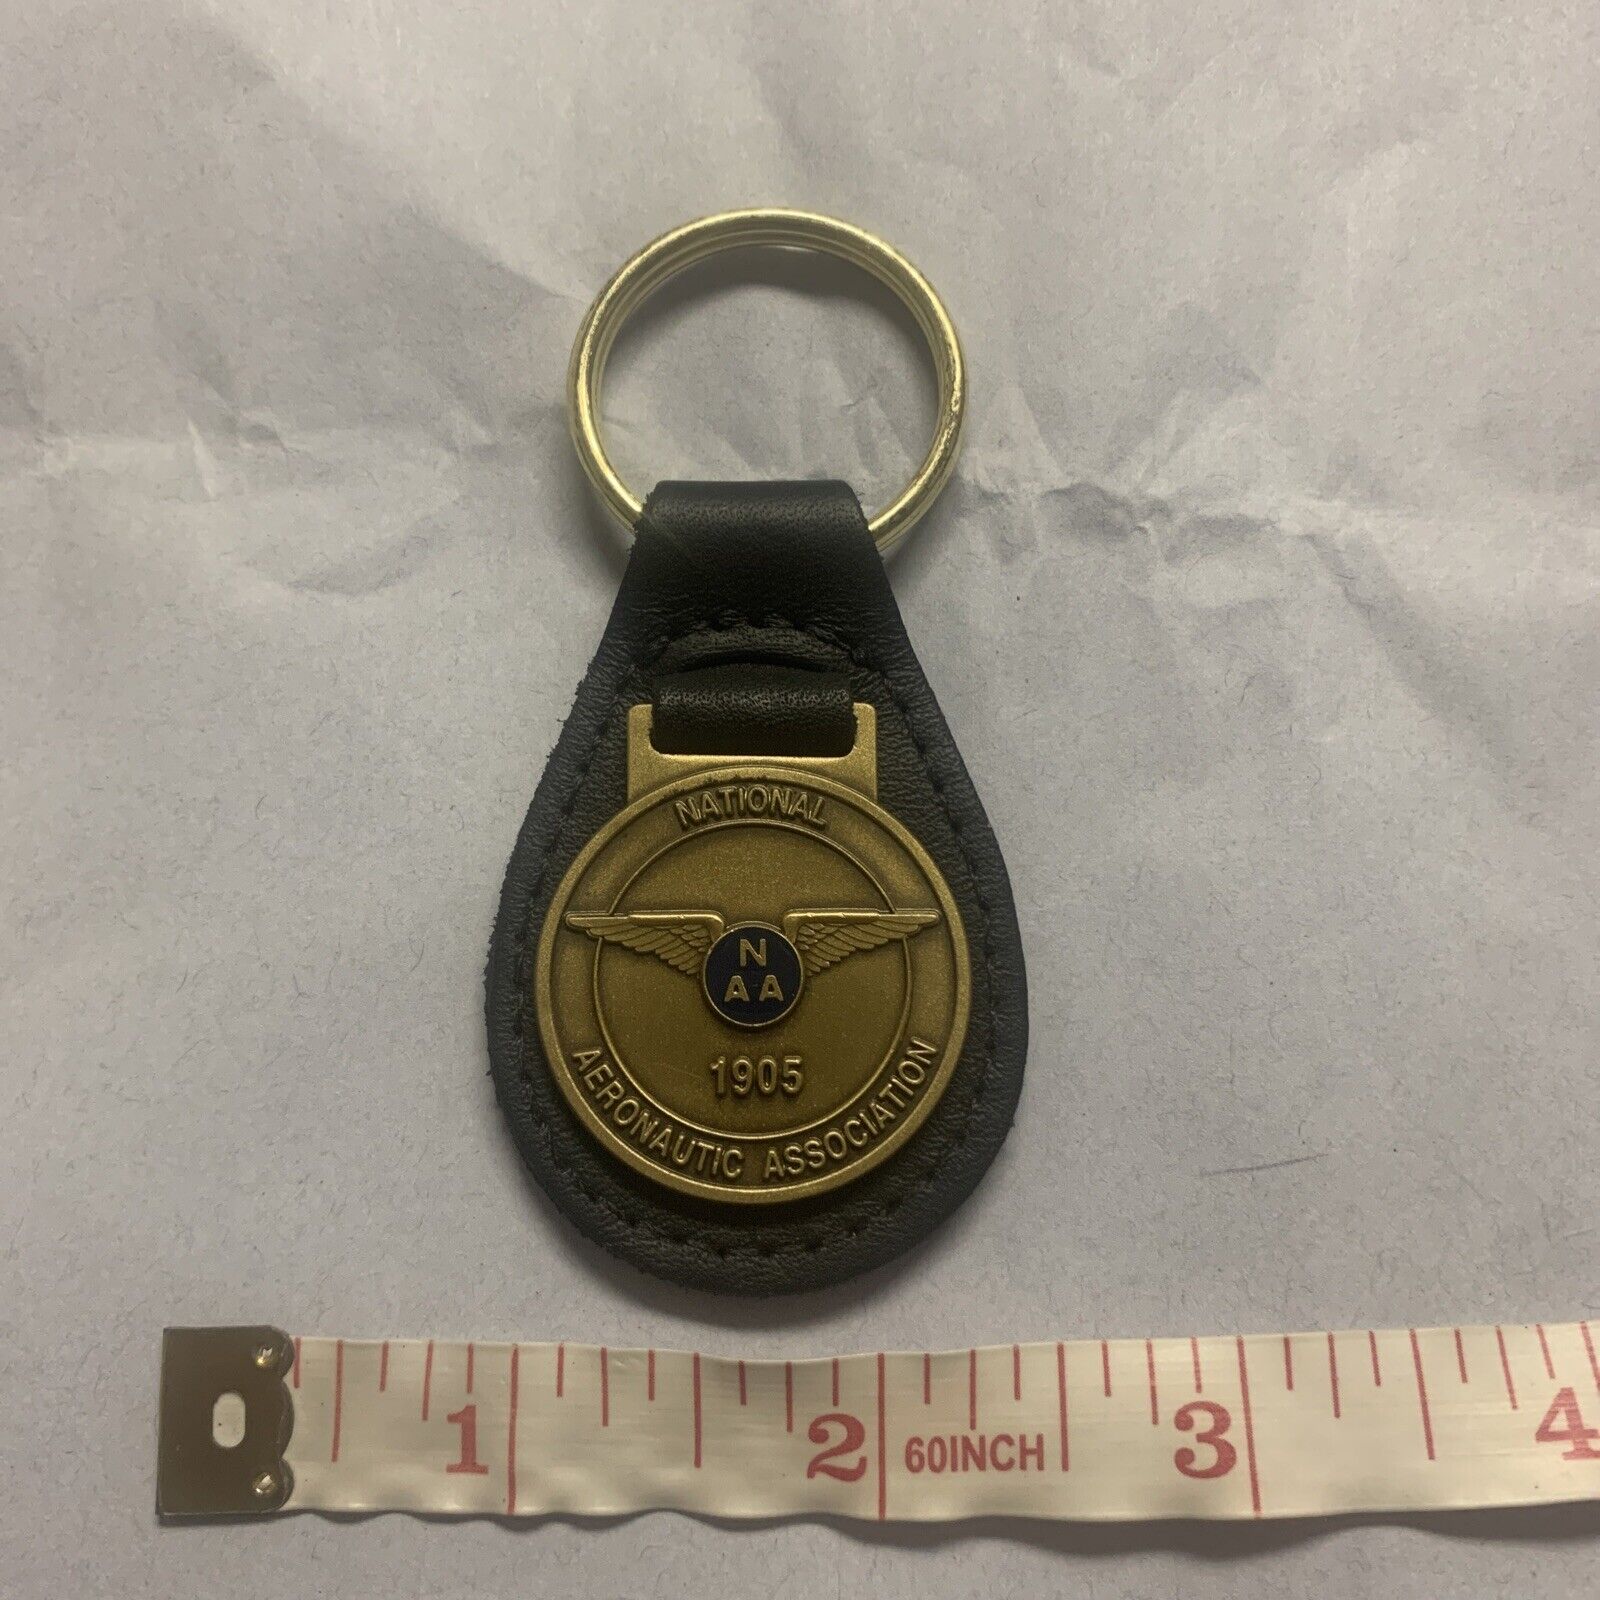 National Aeronautic Association 1905 Key Chain Black Key Ring 